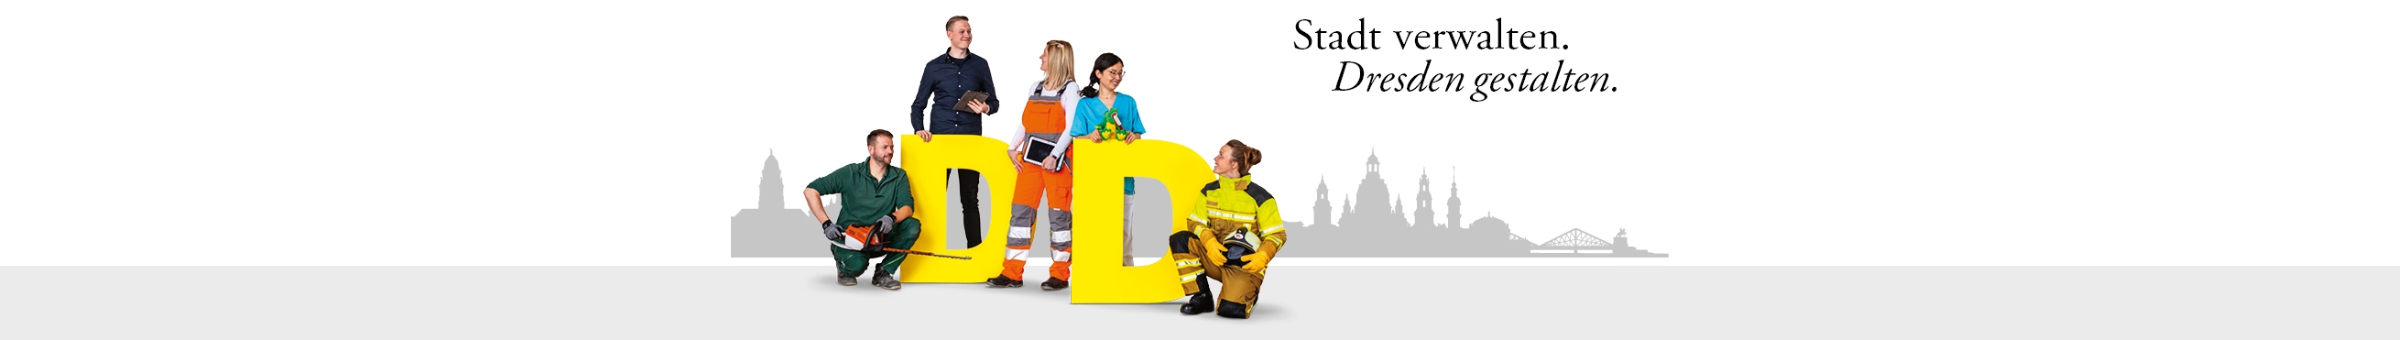 Fünf Menschen, die in der Stadtverwaltung Dresden arbeiten in ihrer typischen Berufskleidung. Darüber steht der Text: "Stadt verwalten. Dresden gestalten".